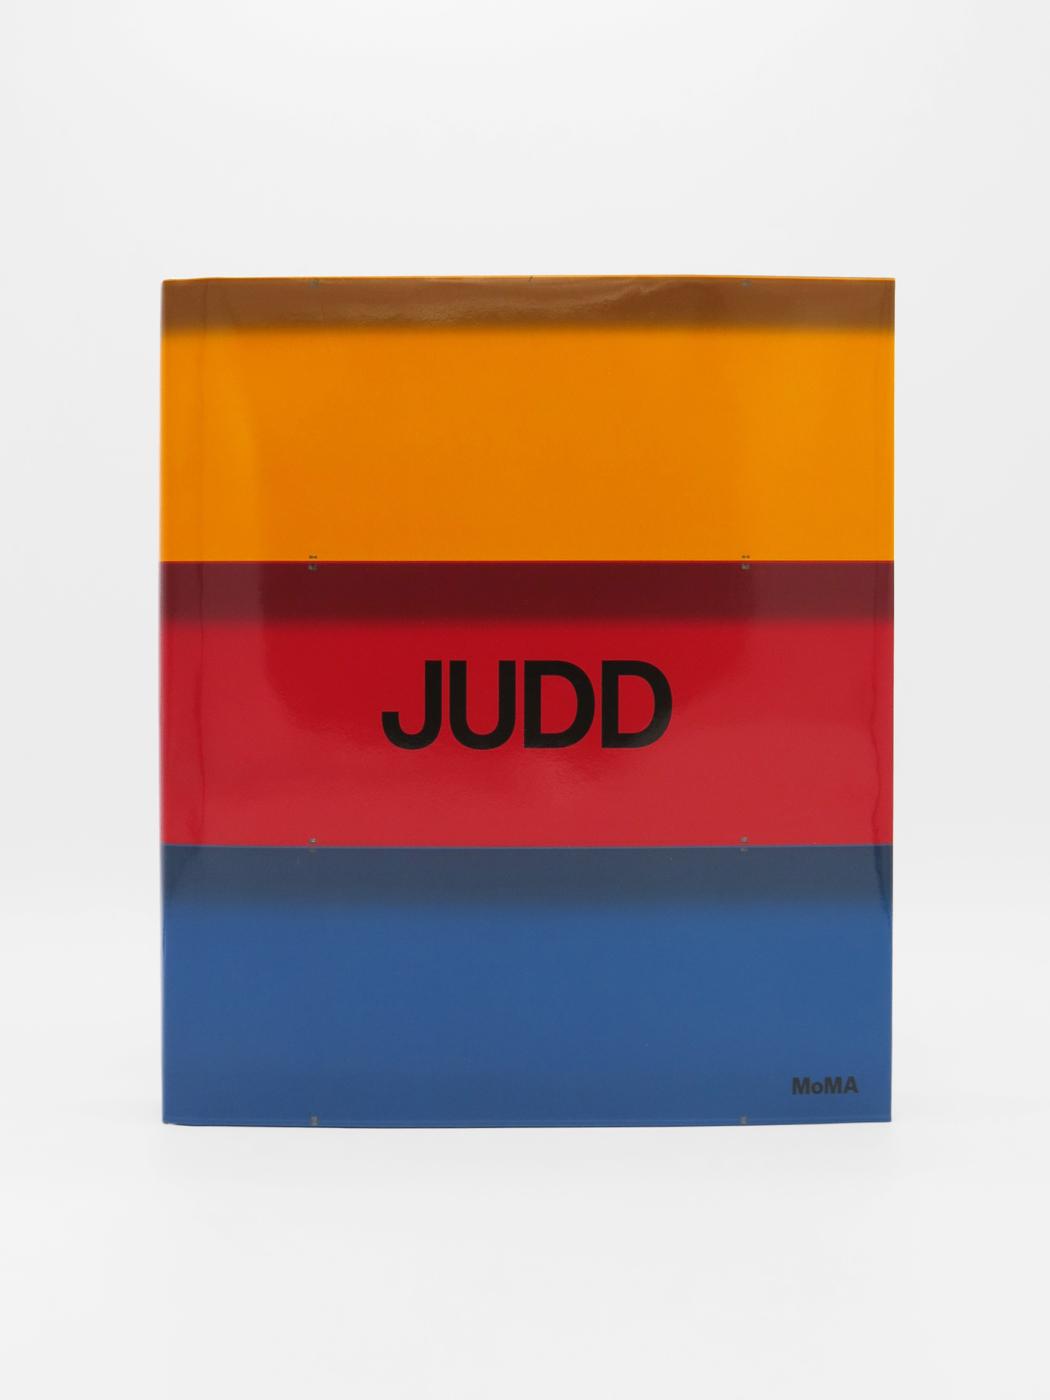 Donald Judd, Judd